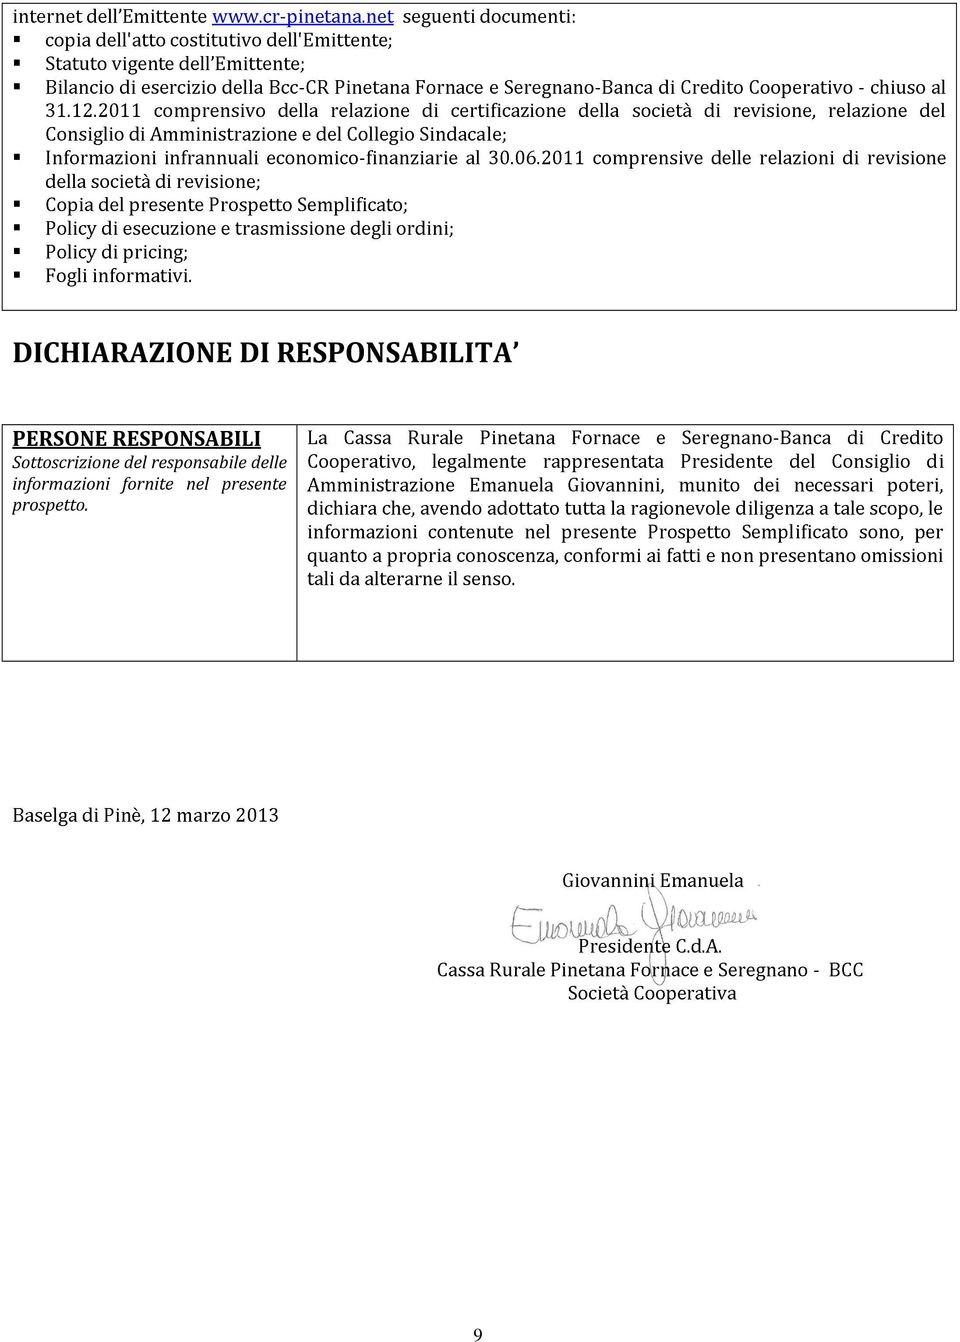 trasmissione economico-finanziarie della Semplificato; e relazione Collegio degli ordini; Sindacale; certificazione al 30.06.